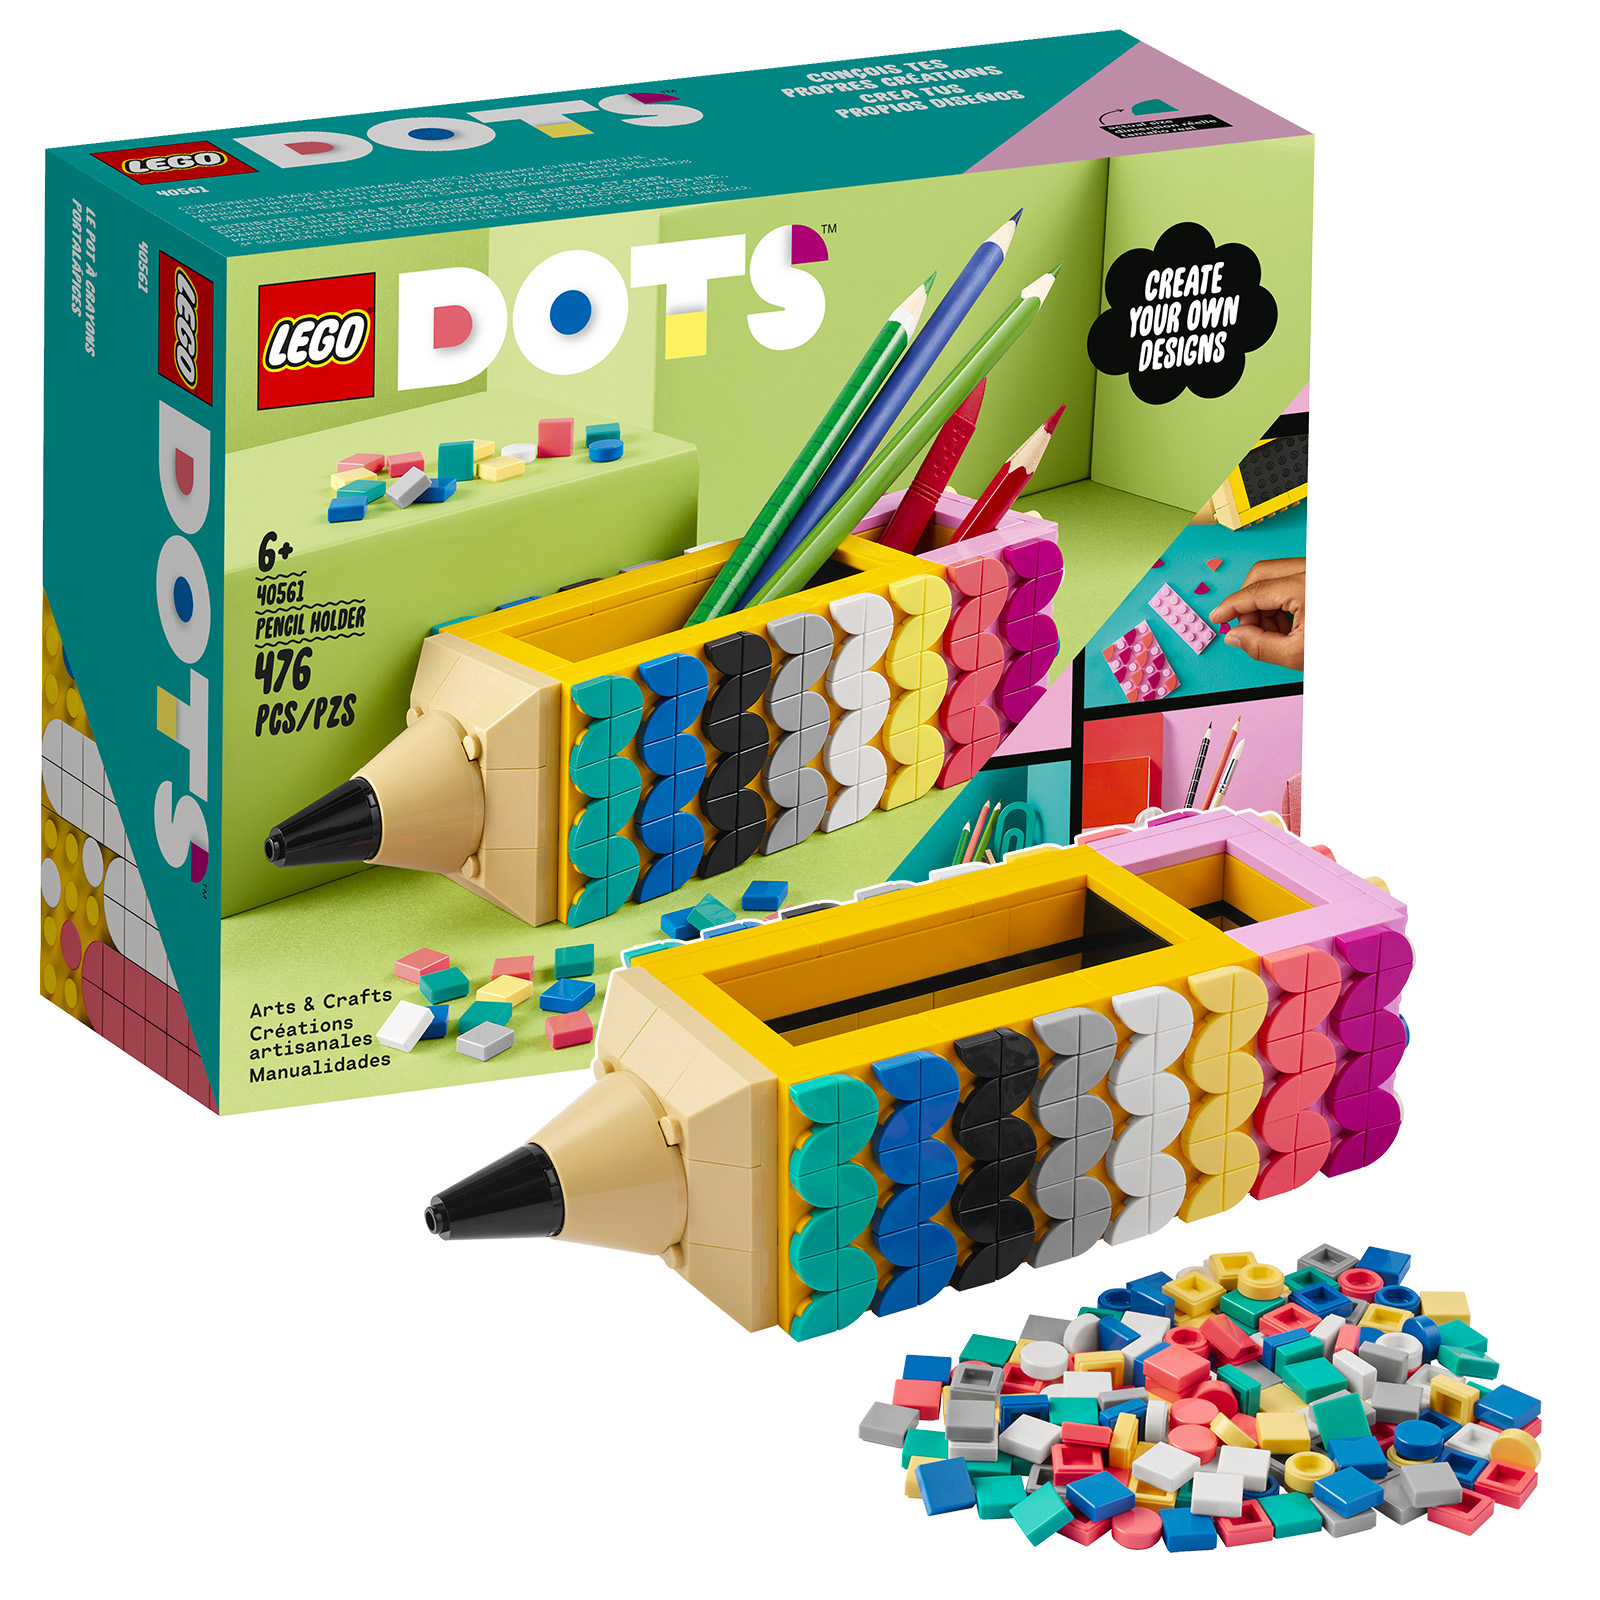 W sklepie LEGO: bezpłatny zestaw uchwytów na ołówki DOTS 40561 i torebka foliowa Super Mario 30509 Yellow Yoshi Fruit Tree